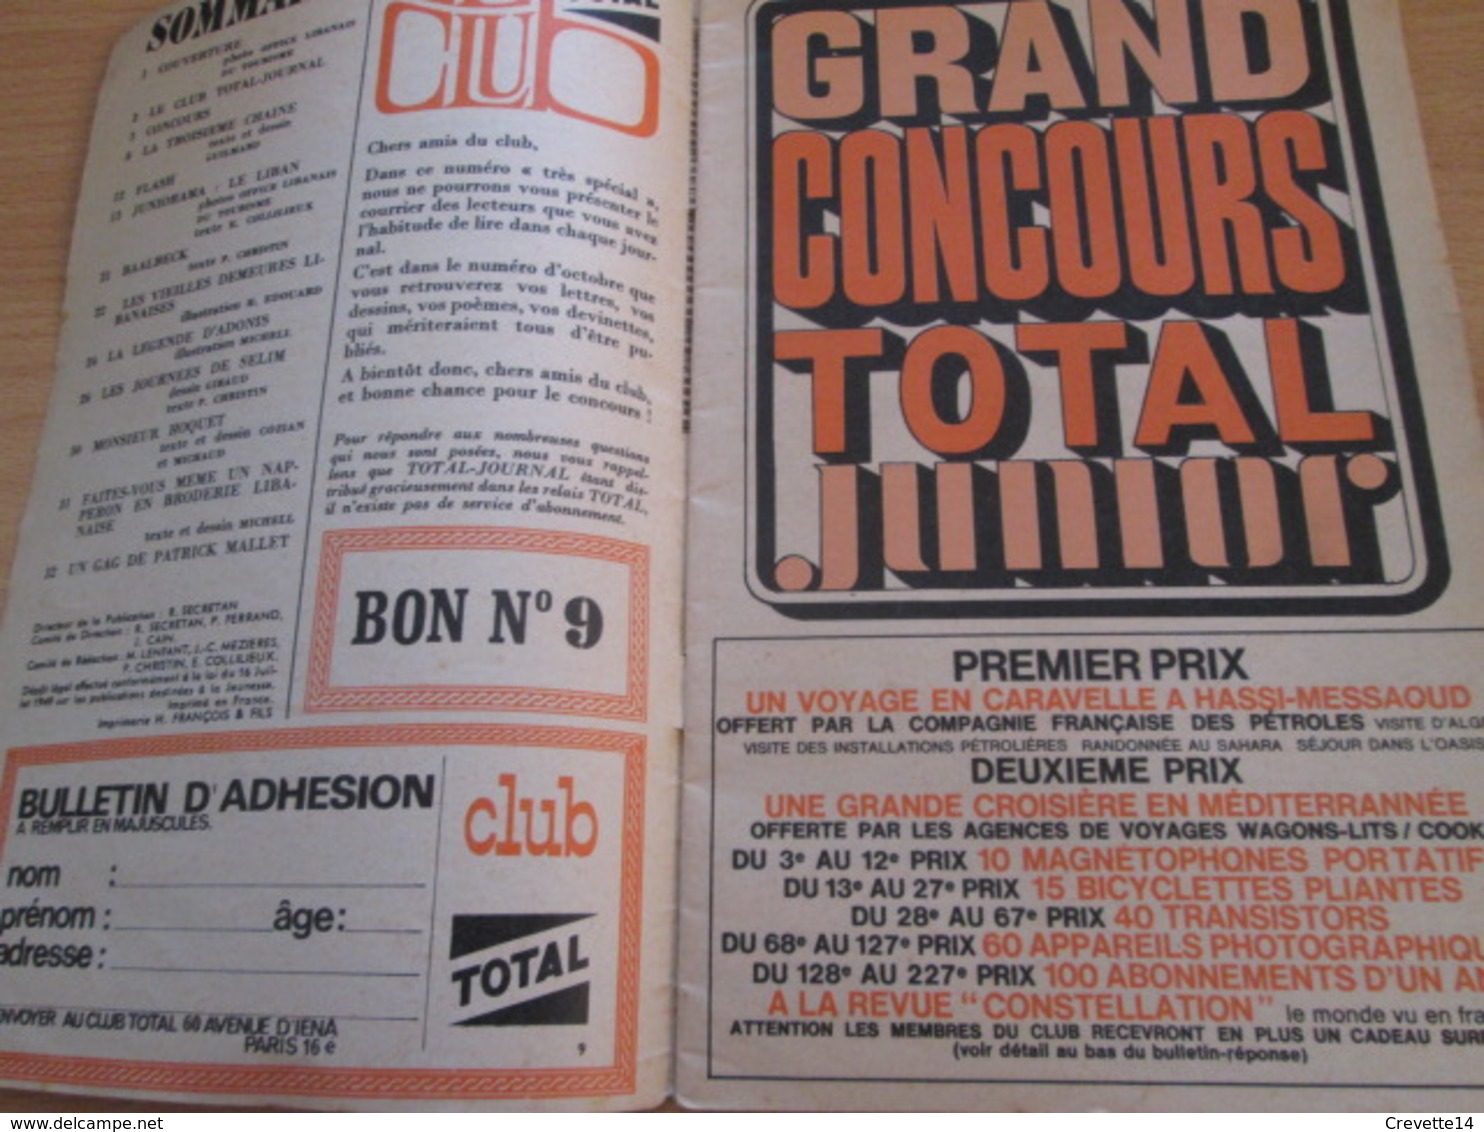 Petite Revue Publicitaire A5 Année 1966 N°9 TOTAL JOURNAL Incluant BD Inédite De CHRISTIN / Vu à 40€ Chez I-B - Advertentie